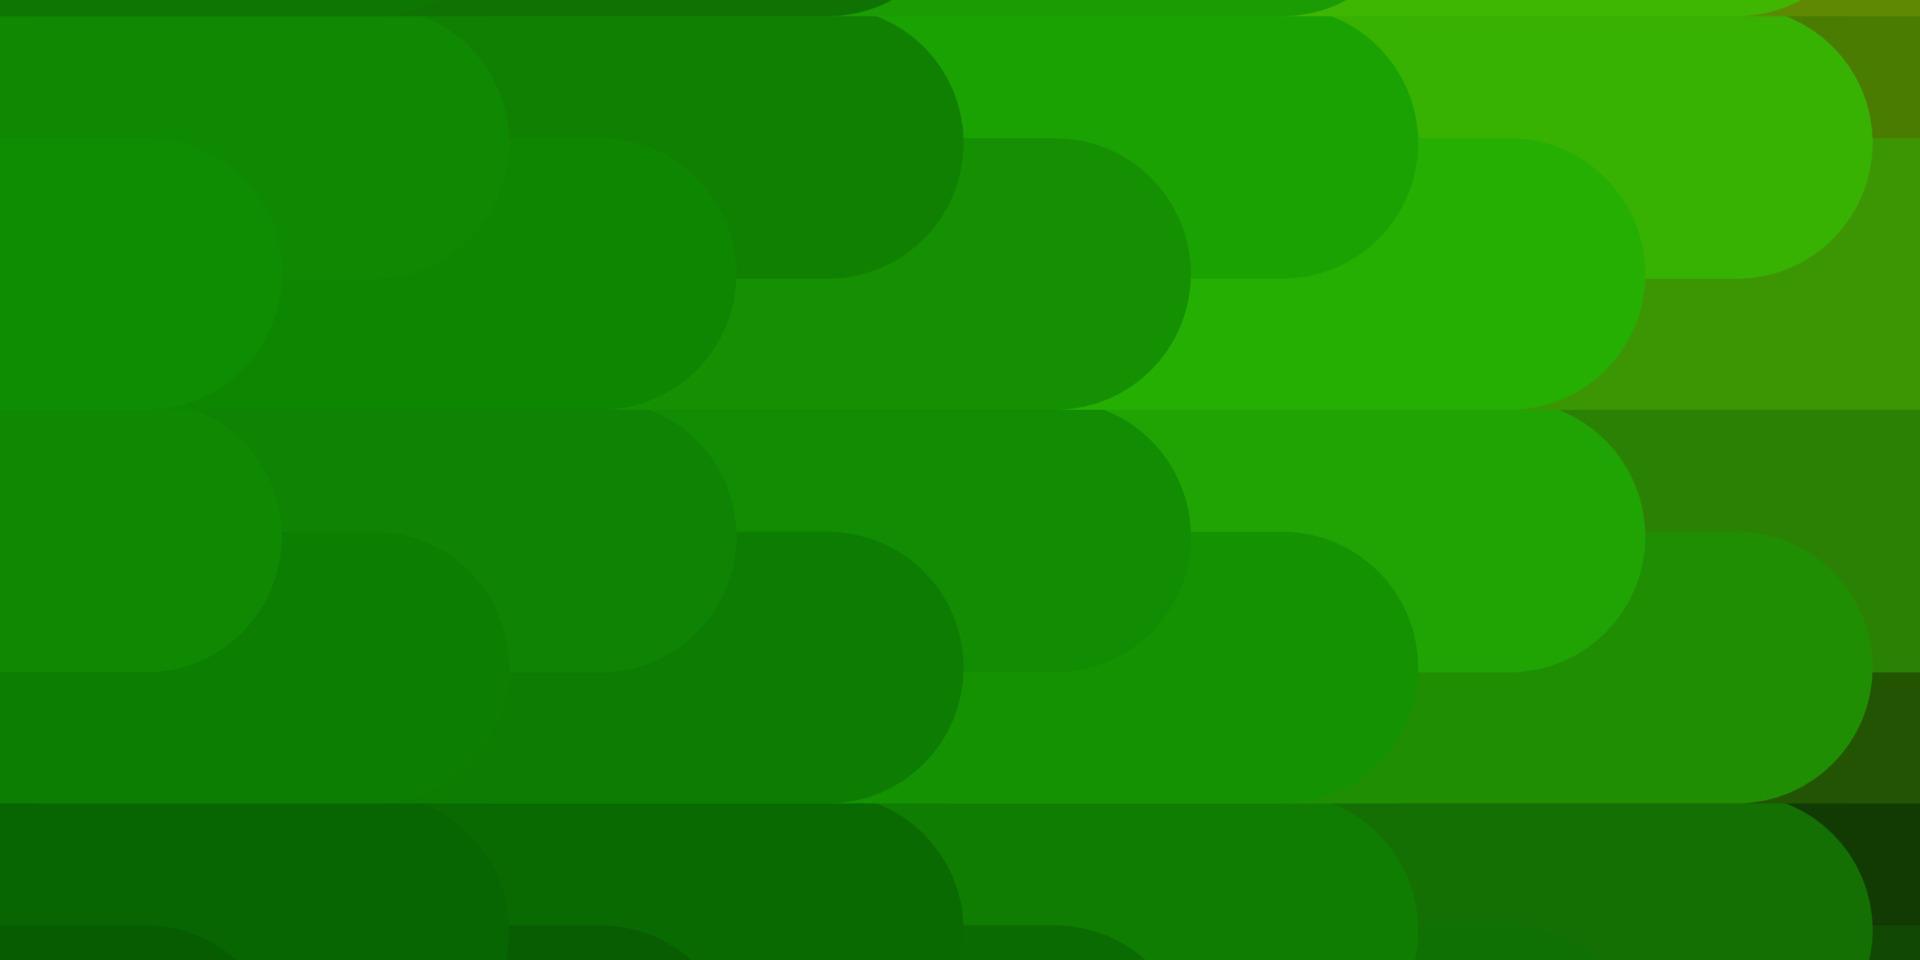 sfondo vettoriale verde chiaro con linee.